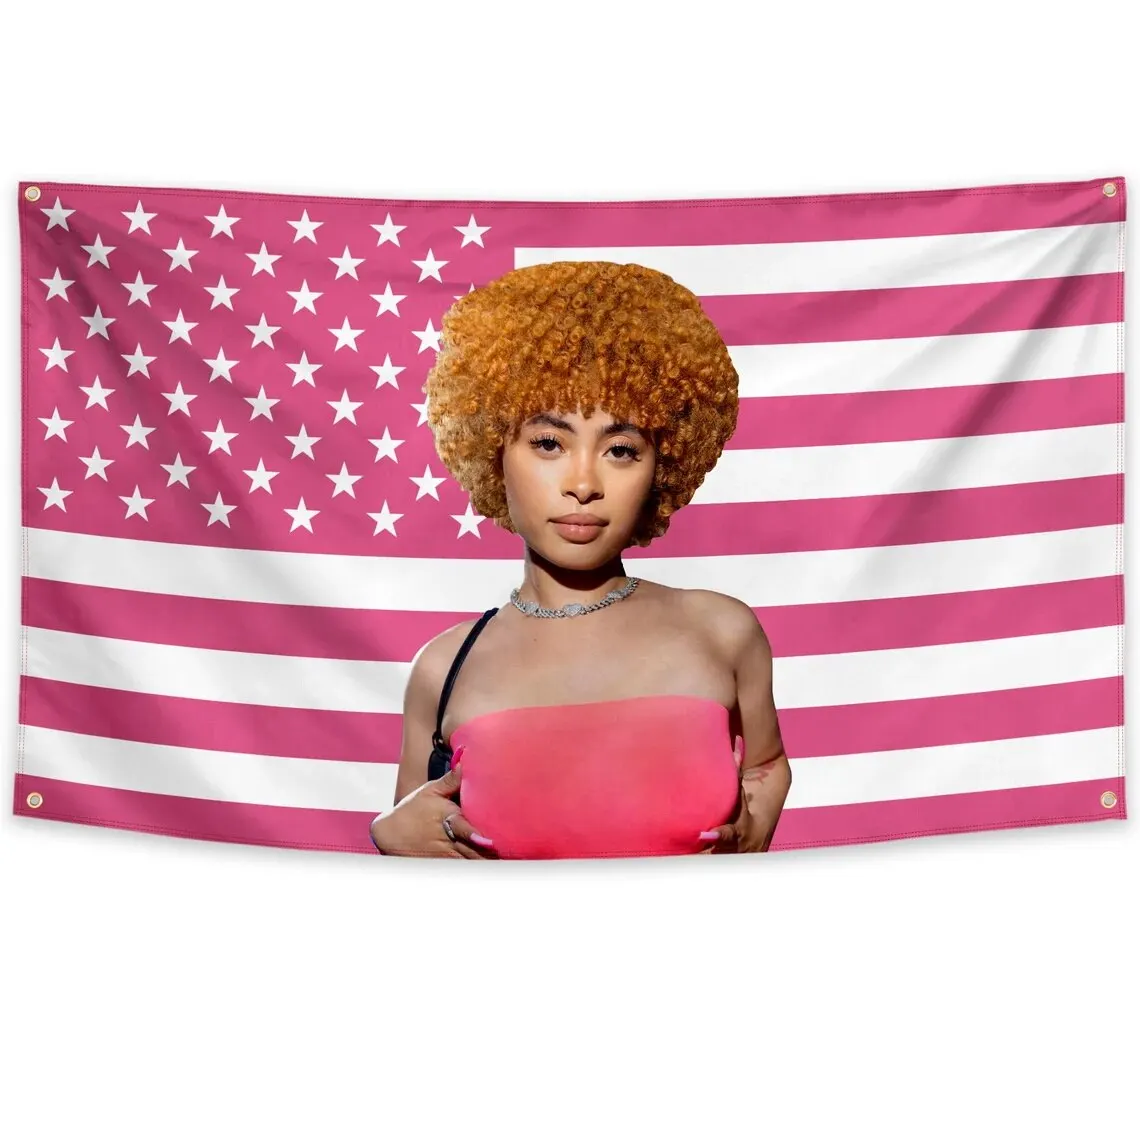 Ice Spice Американский Флаг 3x5 футов Музыкальная Певица Звезда 100D Полиэстер Декор Баннер с 4 Женихами Изображение 3